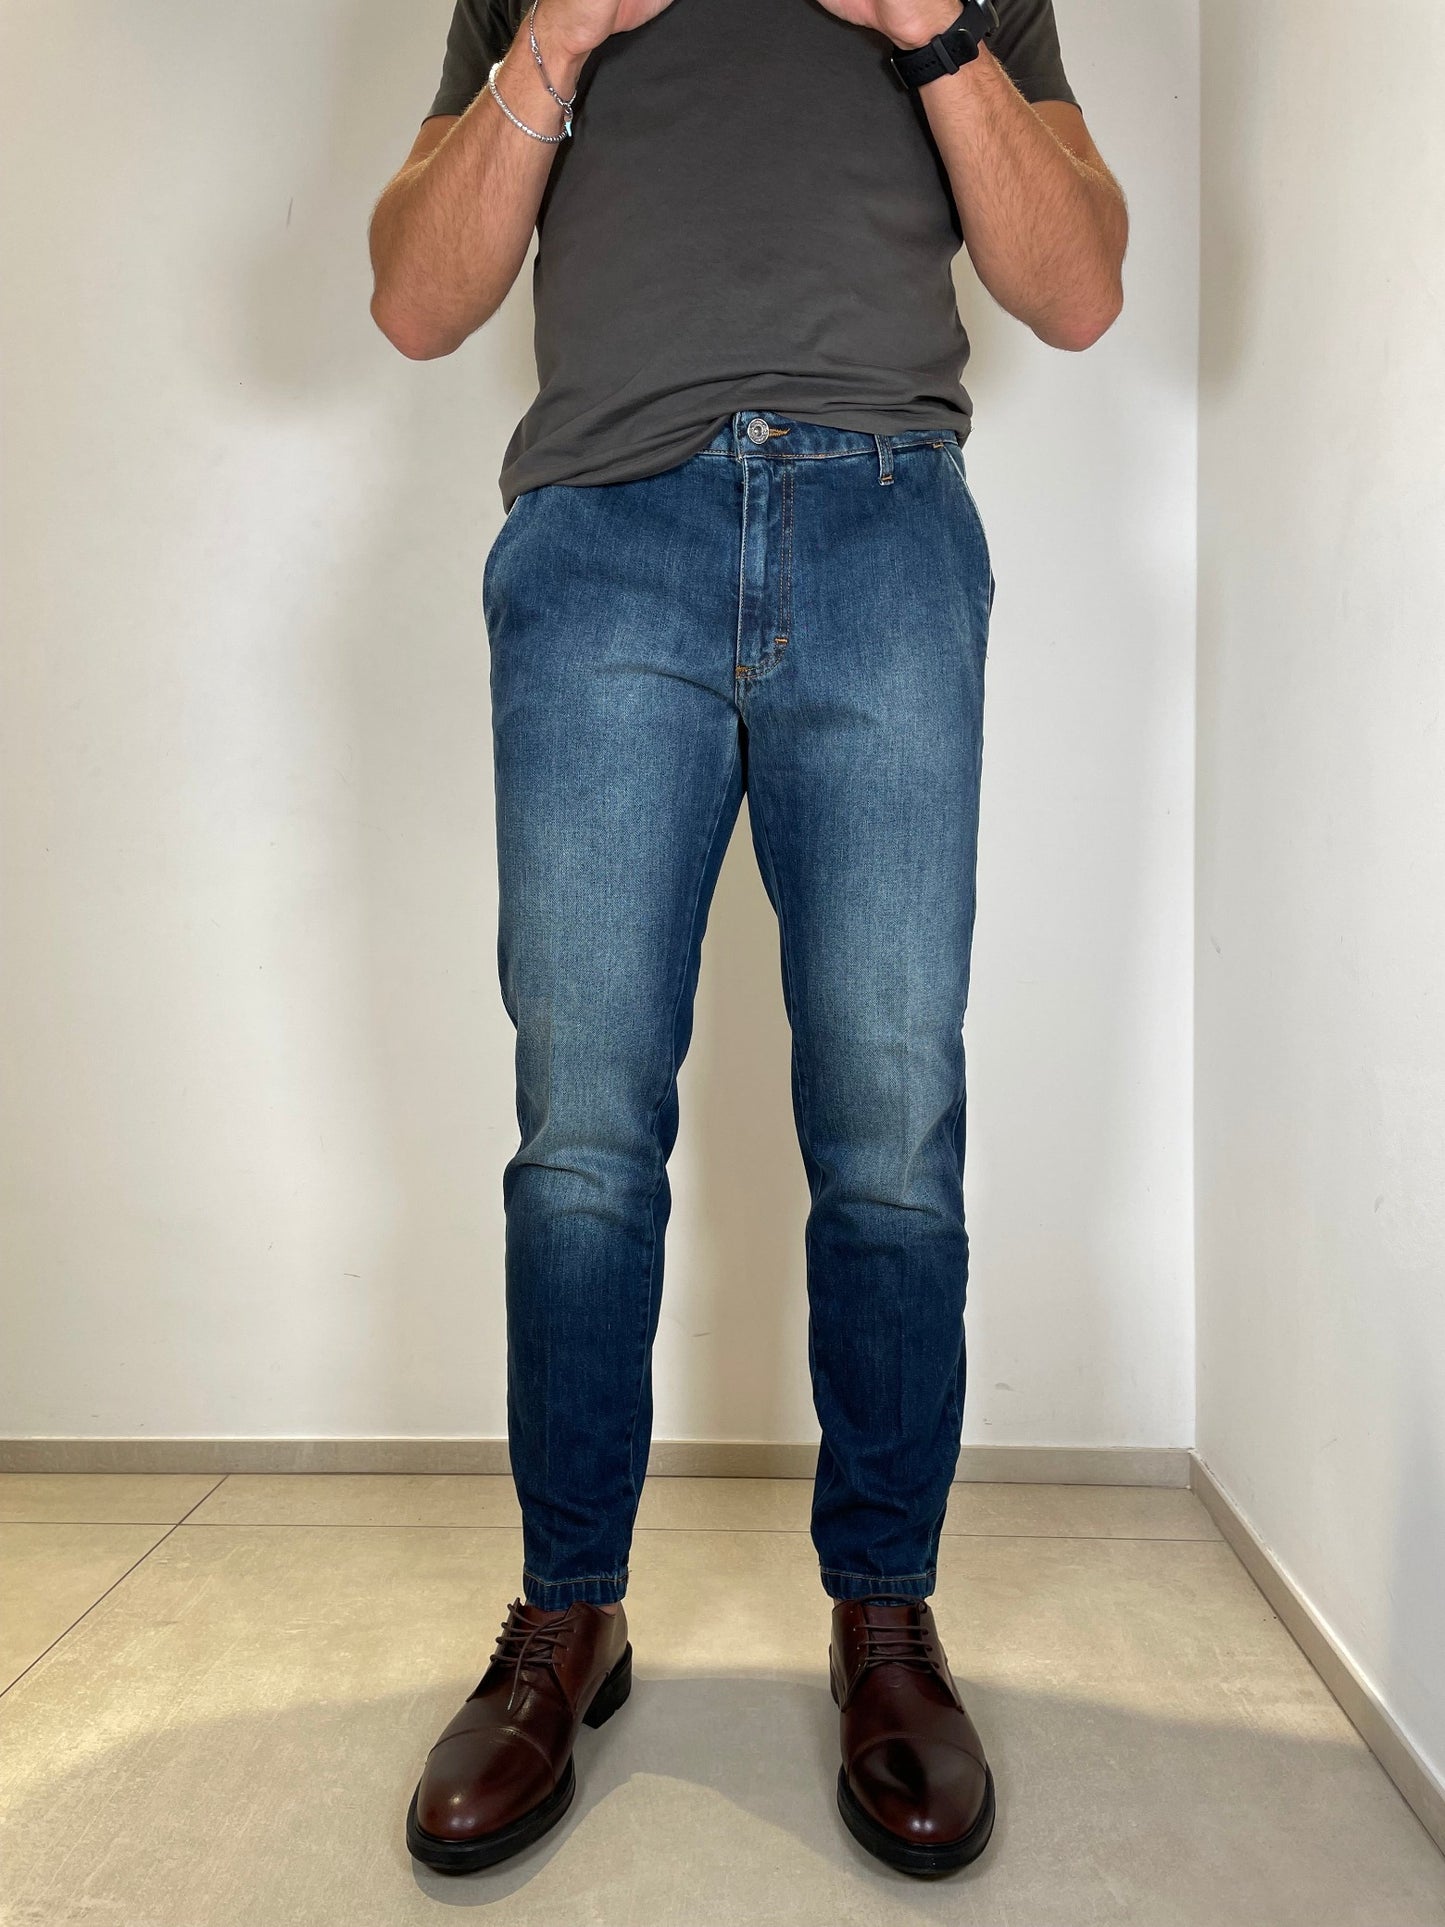 Tom Merritt Jeans